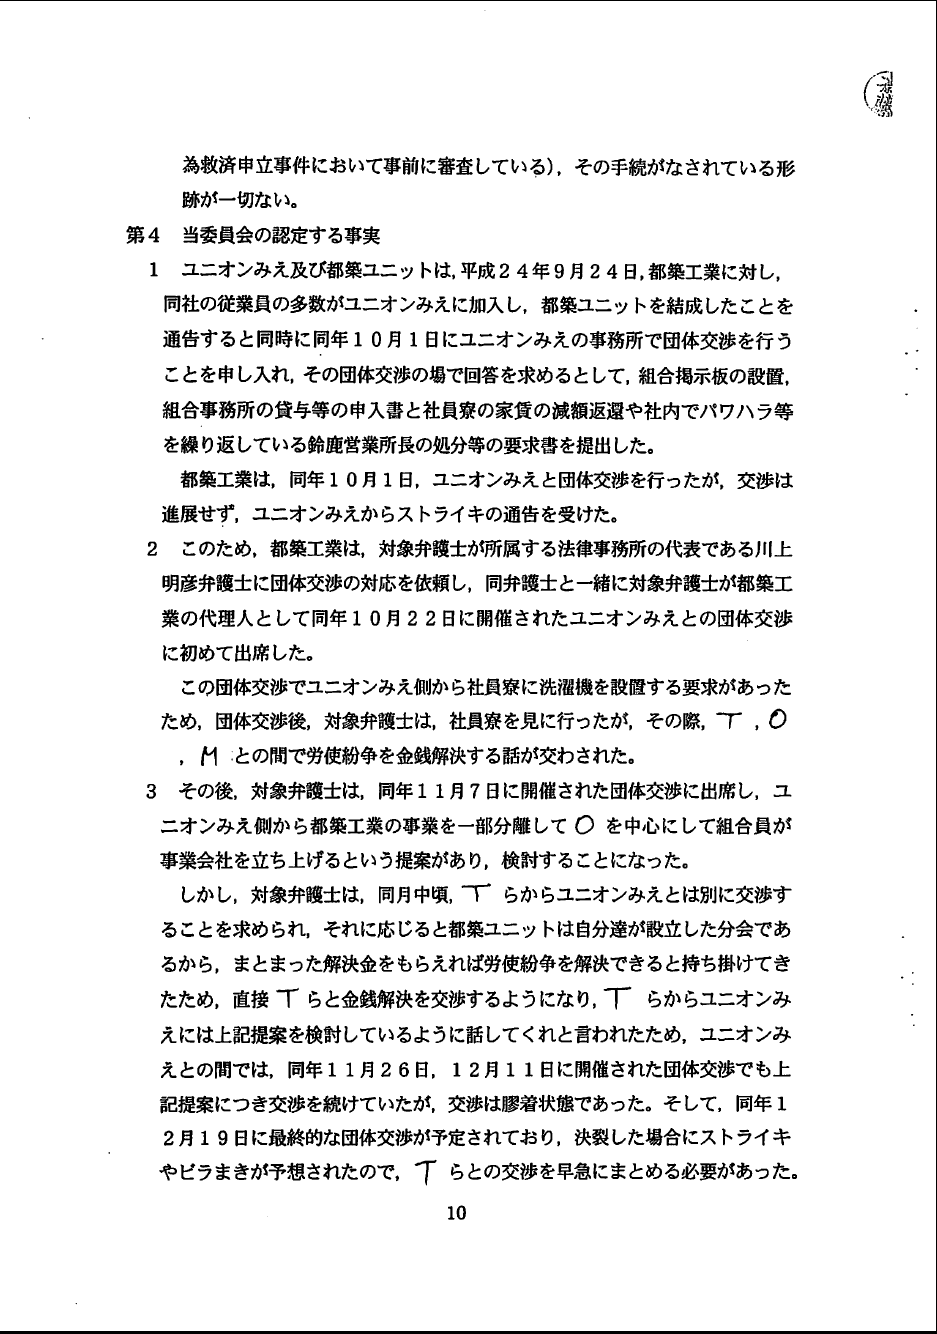 原 武之 弁護士 登録番号30492 に対し 愛知県弁護士会が懲戒決定 ユニオンみえブログ 三重一般労働組合